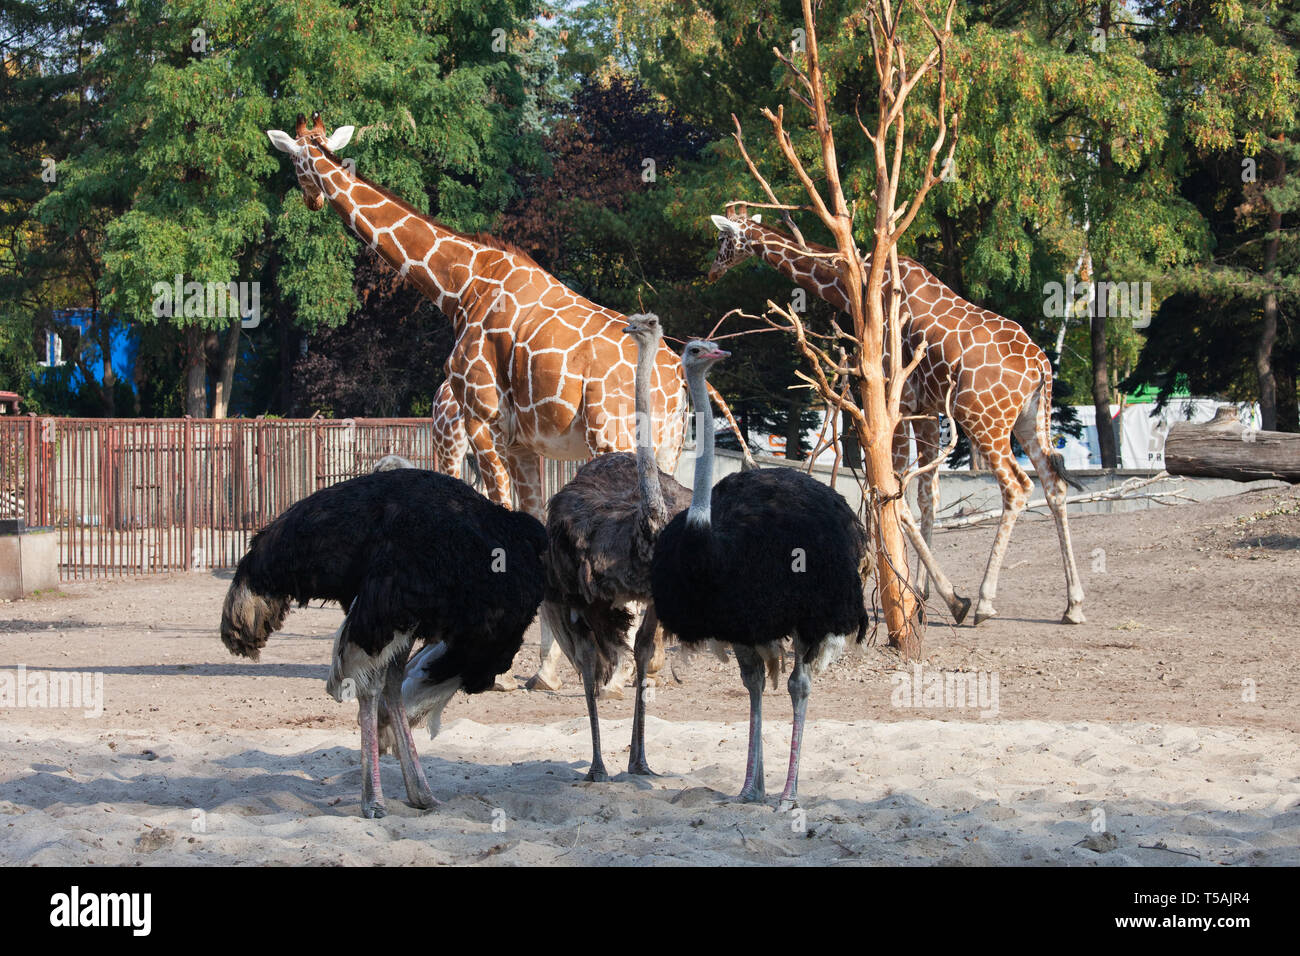 Autruche commune (Struthio camelus) et Girafe (Giraffa camelopardalis) ensemble dans l'enceinte du Zoo dans la ville de Wroclaw en Pologne Banque D'Images